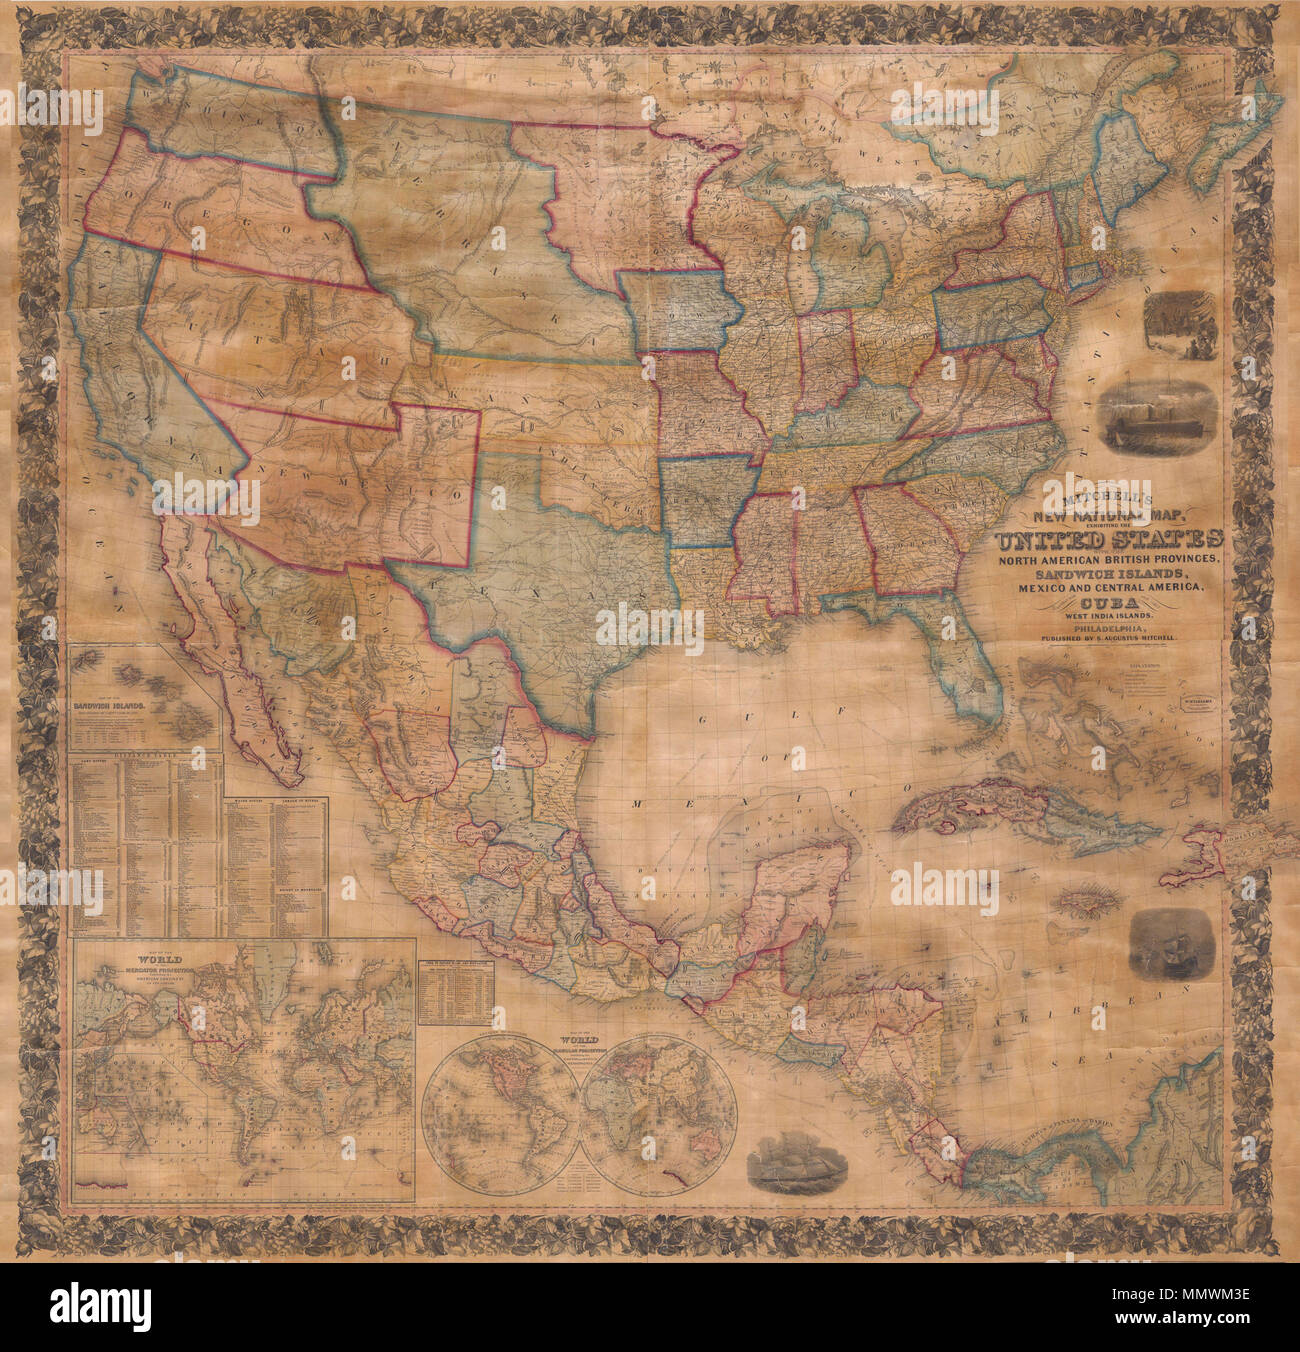 . Anglais : c'est la première édition de Mitchell est important 1856 carte murale des États-Unis, le Mexique et les Antilles. Depictss la nation tout entière de l'Atlantique au Pacifique avec des cartons intérieurs du monde sur la projection de Mercator et le monde sur la projection sphérique, et les îles Sandwich (Hawaii). Dans son livre important sur la cartographie de l'Ouest 1540-1861 Blé Transmississippi , appelle ce site une "réalisation" et la partie ouest il décrit de façon très détaillée. Cette carte murale comprend le territoire acquise après la guerre américaine et mexicaine est l'une des meilleures scènes de l'Ouest Banque D'Images